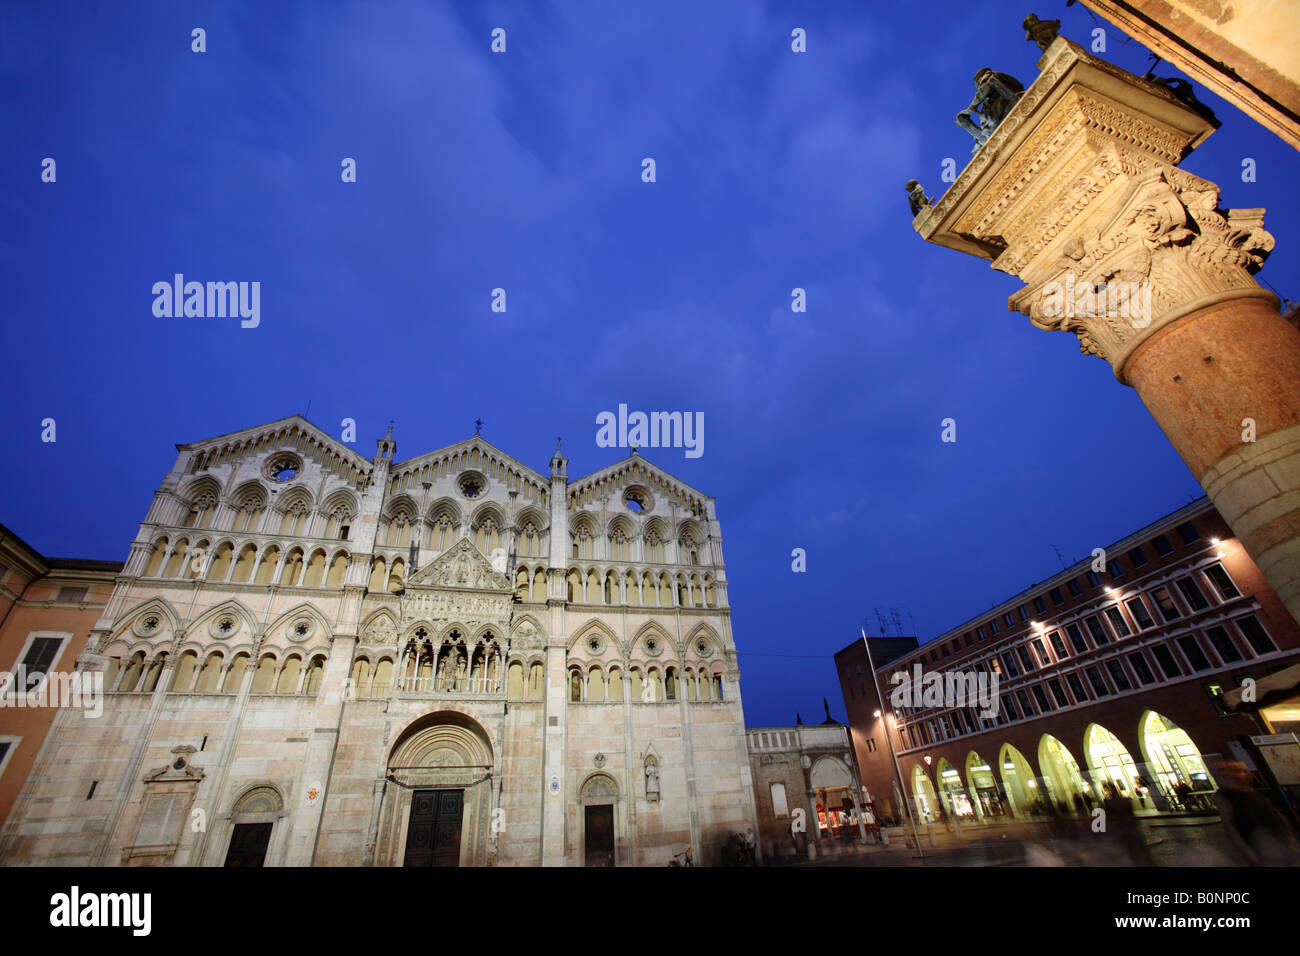 Facade of San Giorgio's cathedral, Ferrara, Italy Stock Photo